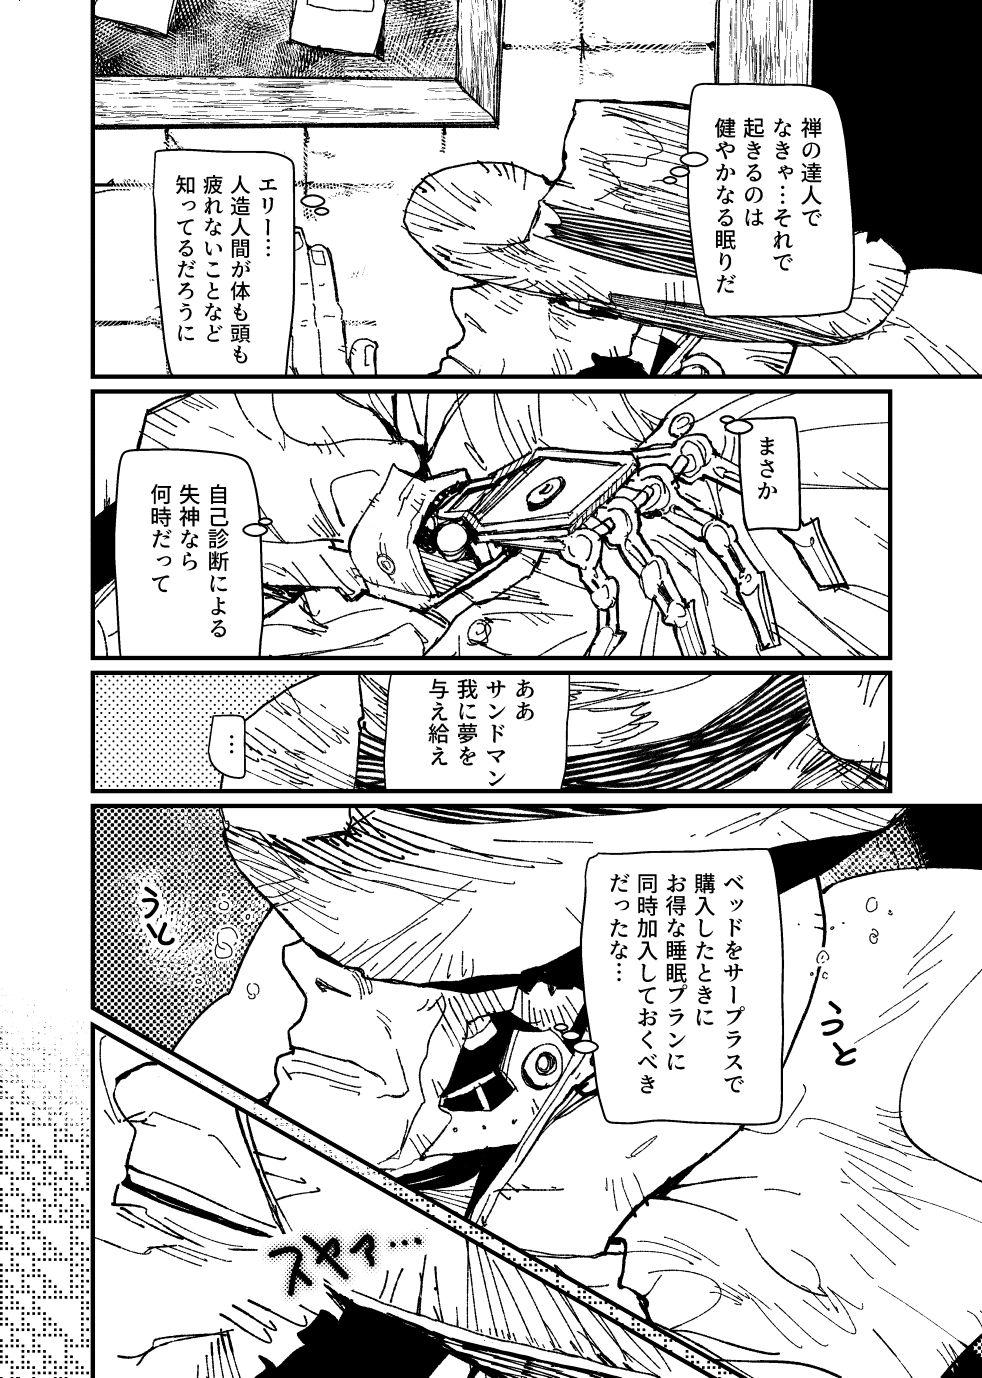 [Tanokura] FO4 [R18] Dimaniku Manga 7